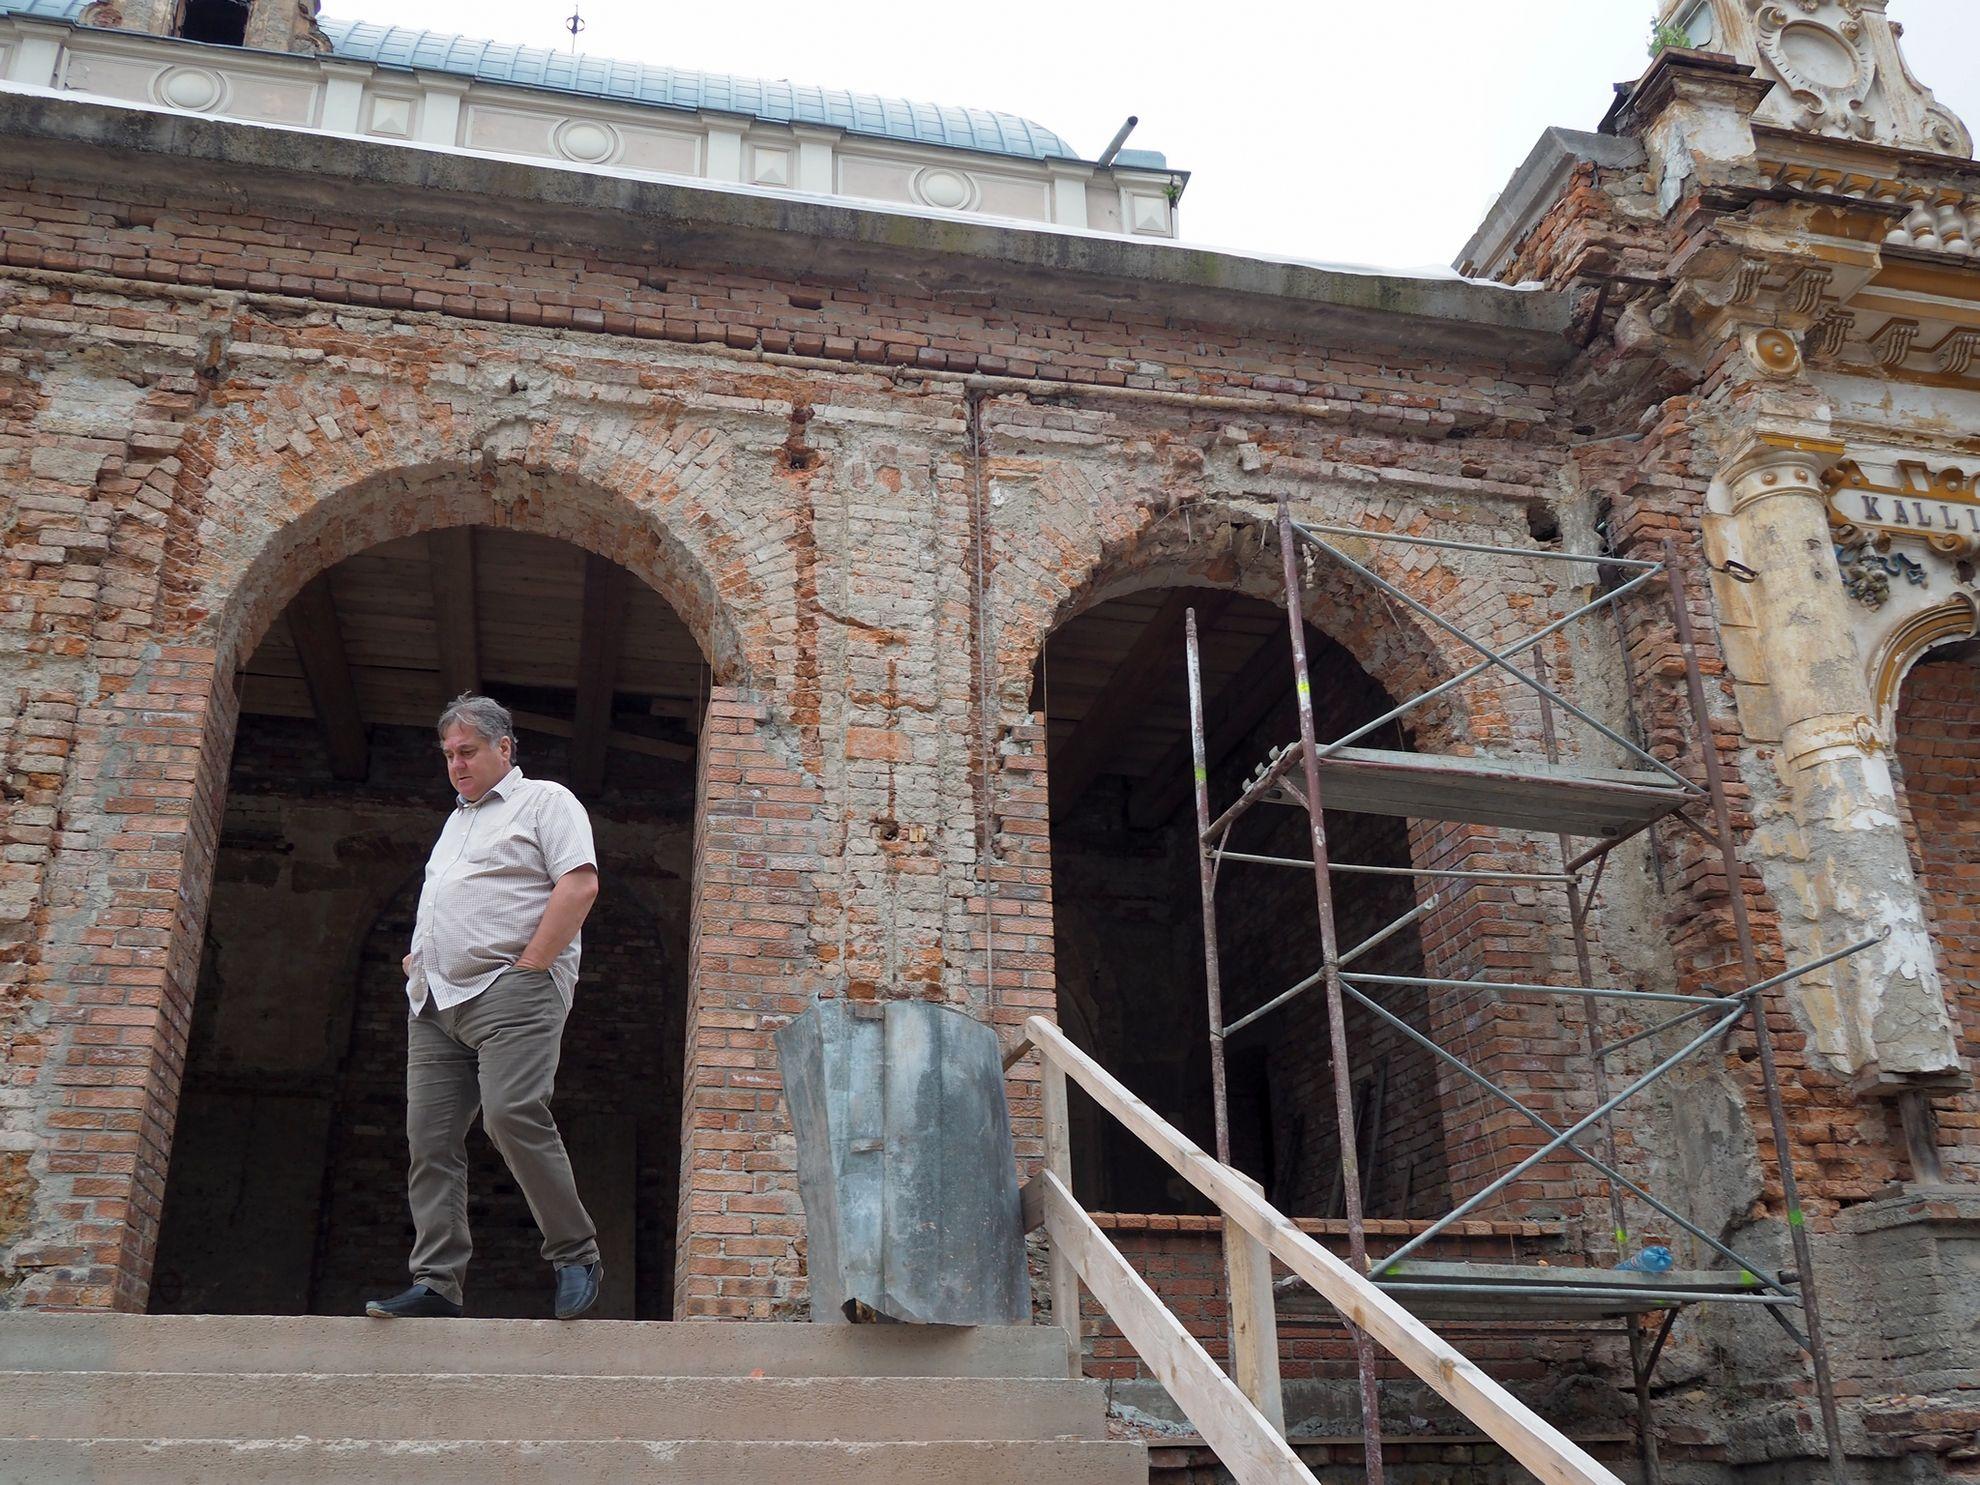 Domnul Macovei Mihai, șef de șantier, pe treptele clădirii în plin proces de restaurare. Cazinoul Băilor este un proiect complex, implicând o energie uriașă. 